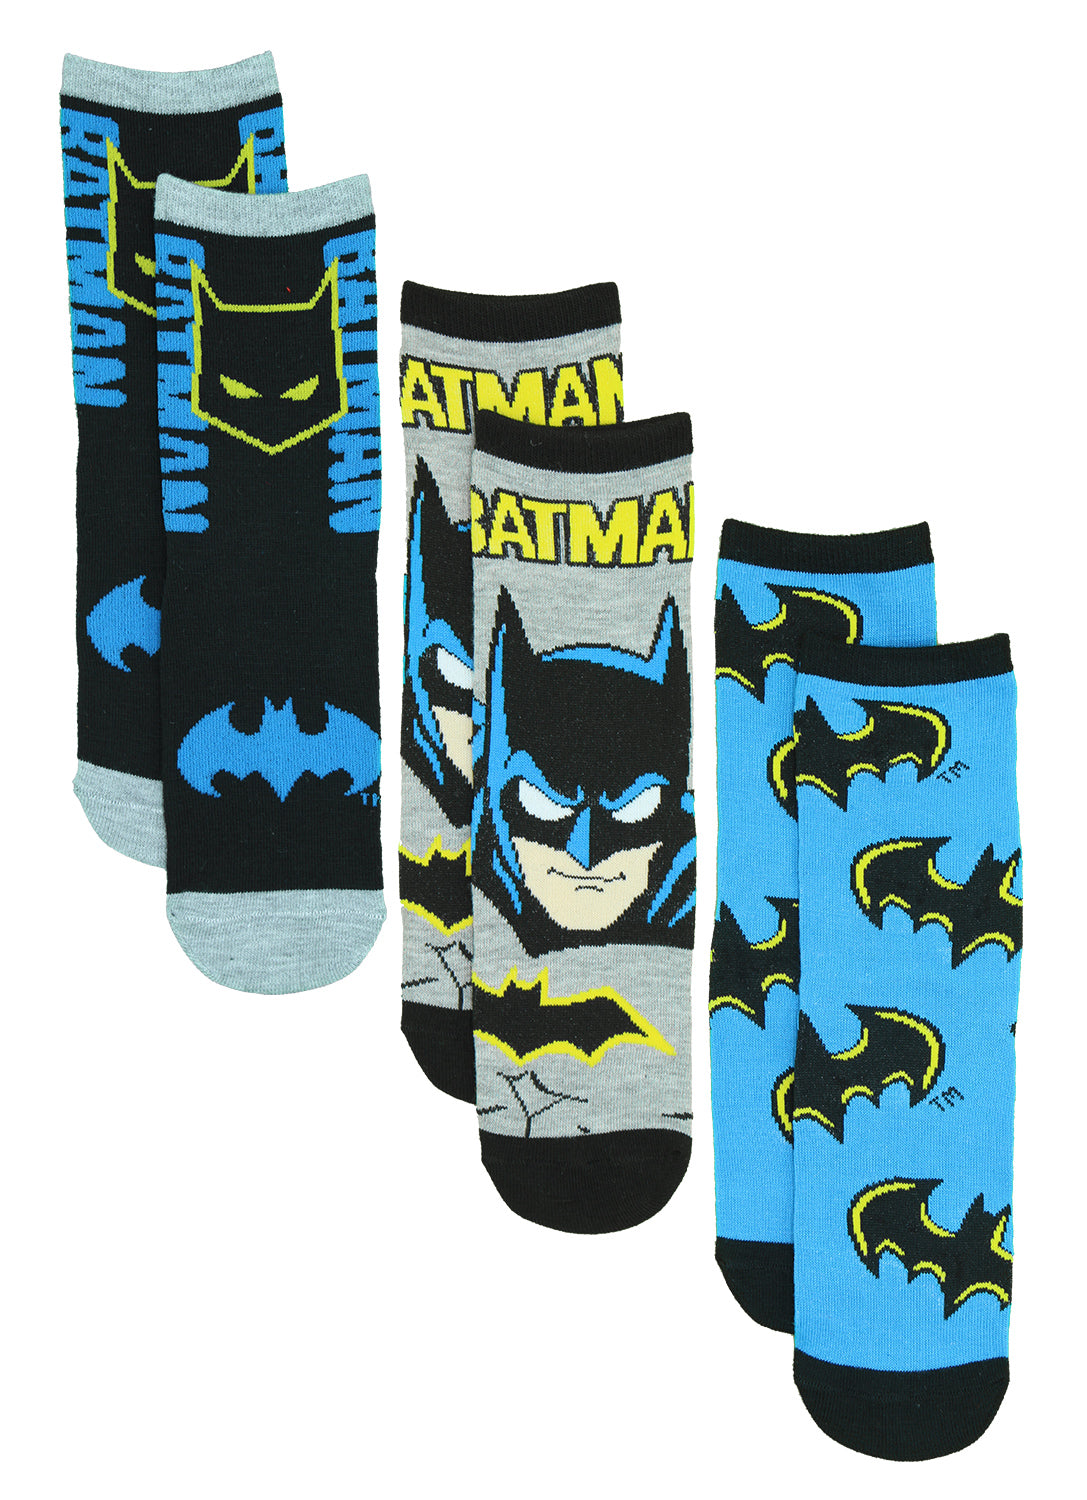 Chaussettes Batman rétro pour garçons - Paquet de 3